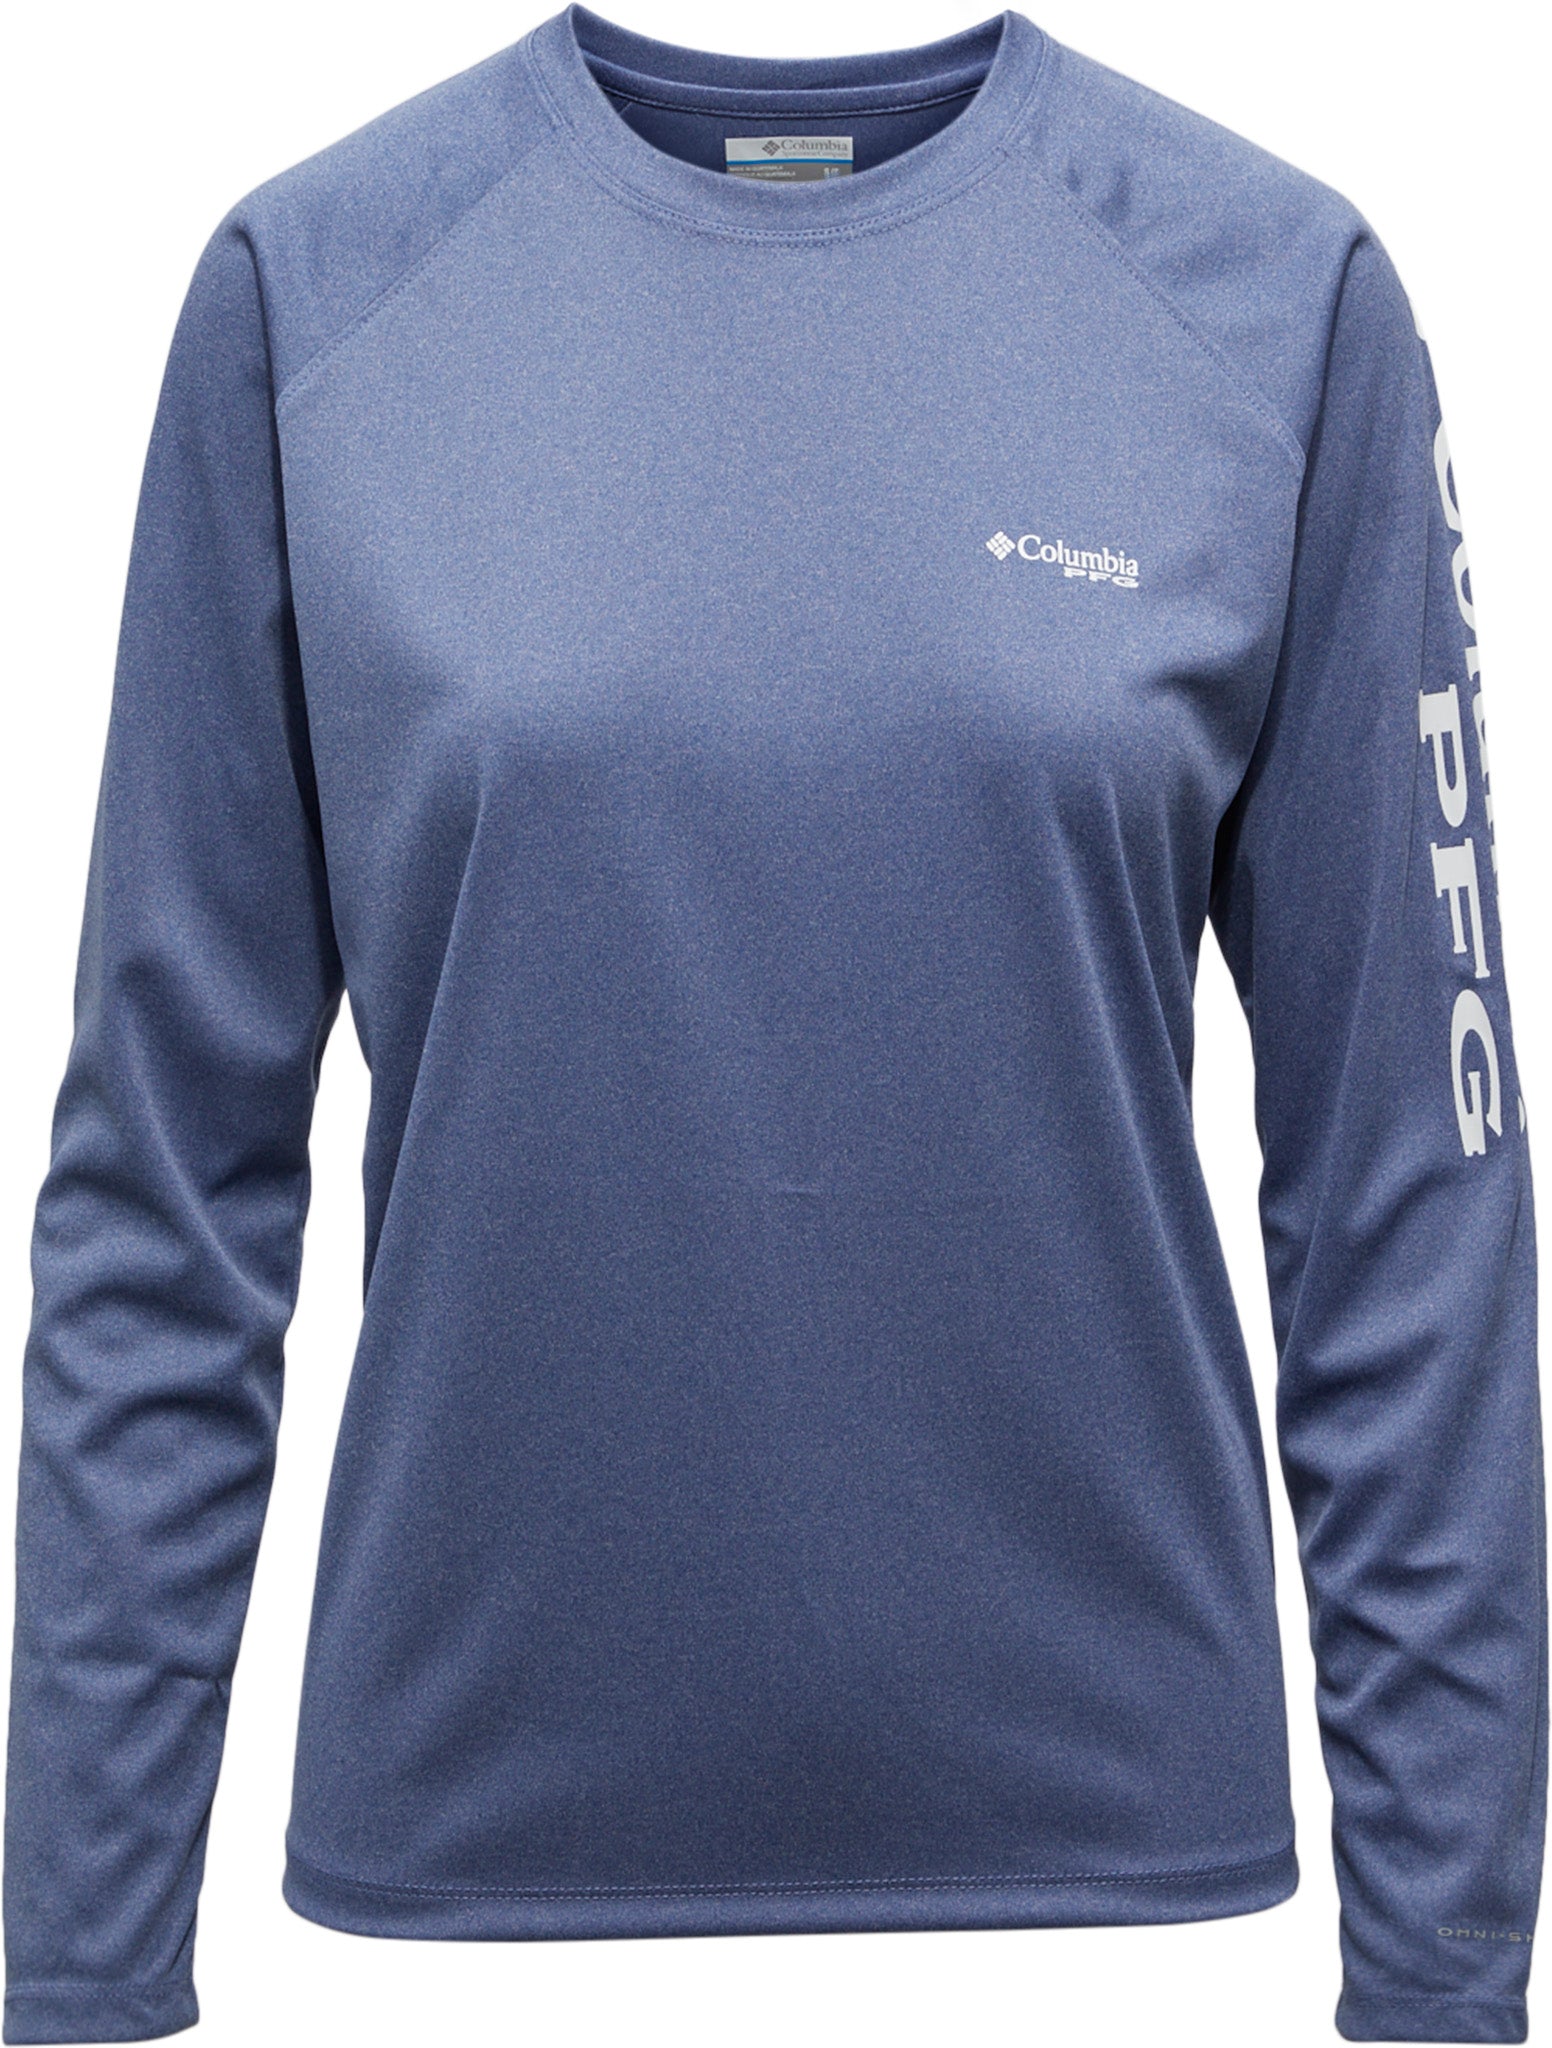 Columbia Tidal II Long-Sleeve T-Shirt - Women's - Fishing